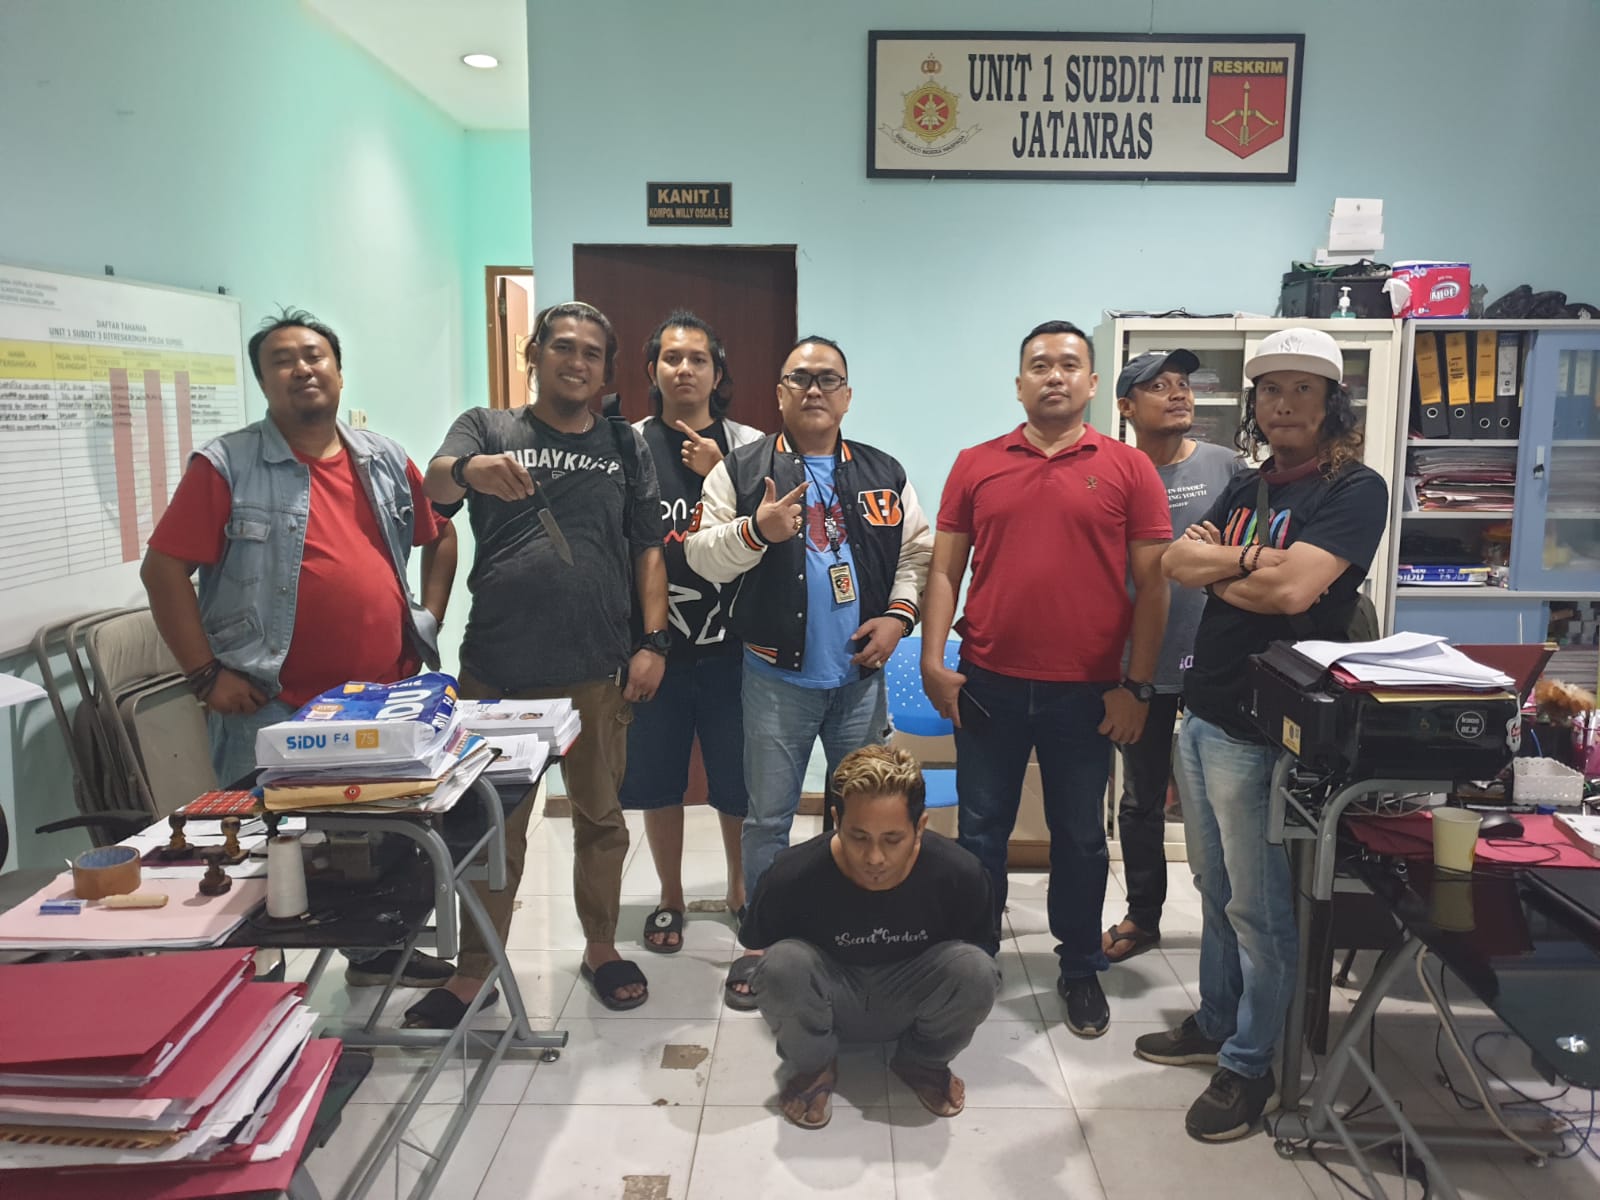 Modus Perampokan di Palembang, Hadang Pengendara Mobil di Jalan, Jatanras Polda Sumsel Tak Tinggal Diam